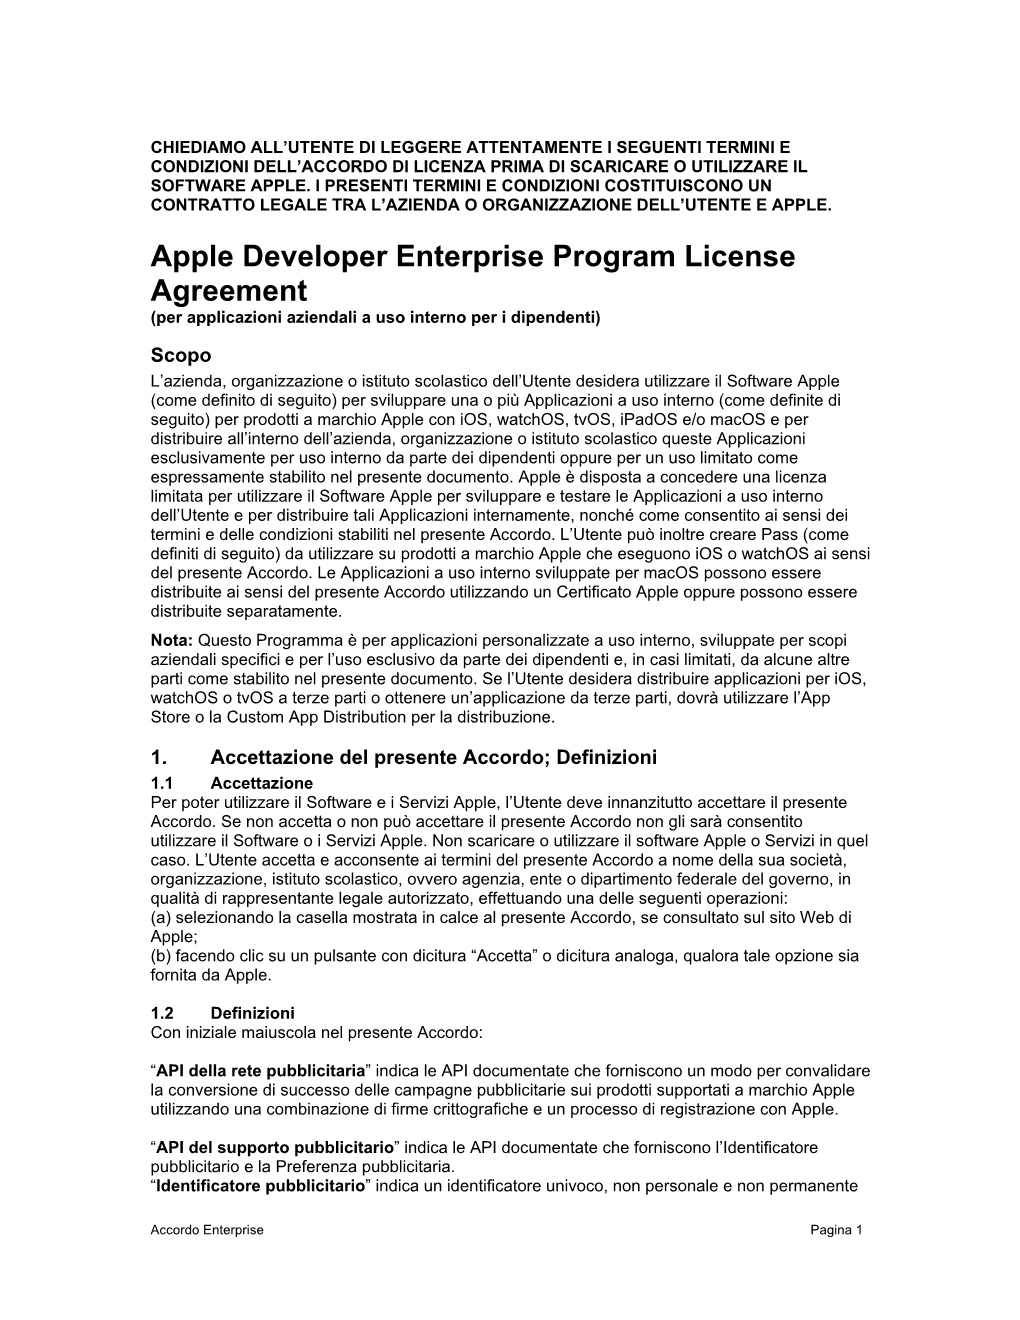 Apple Developer Enterprise Program License Agreement